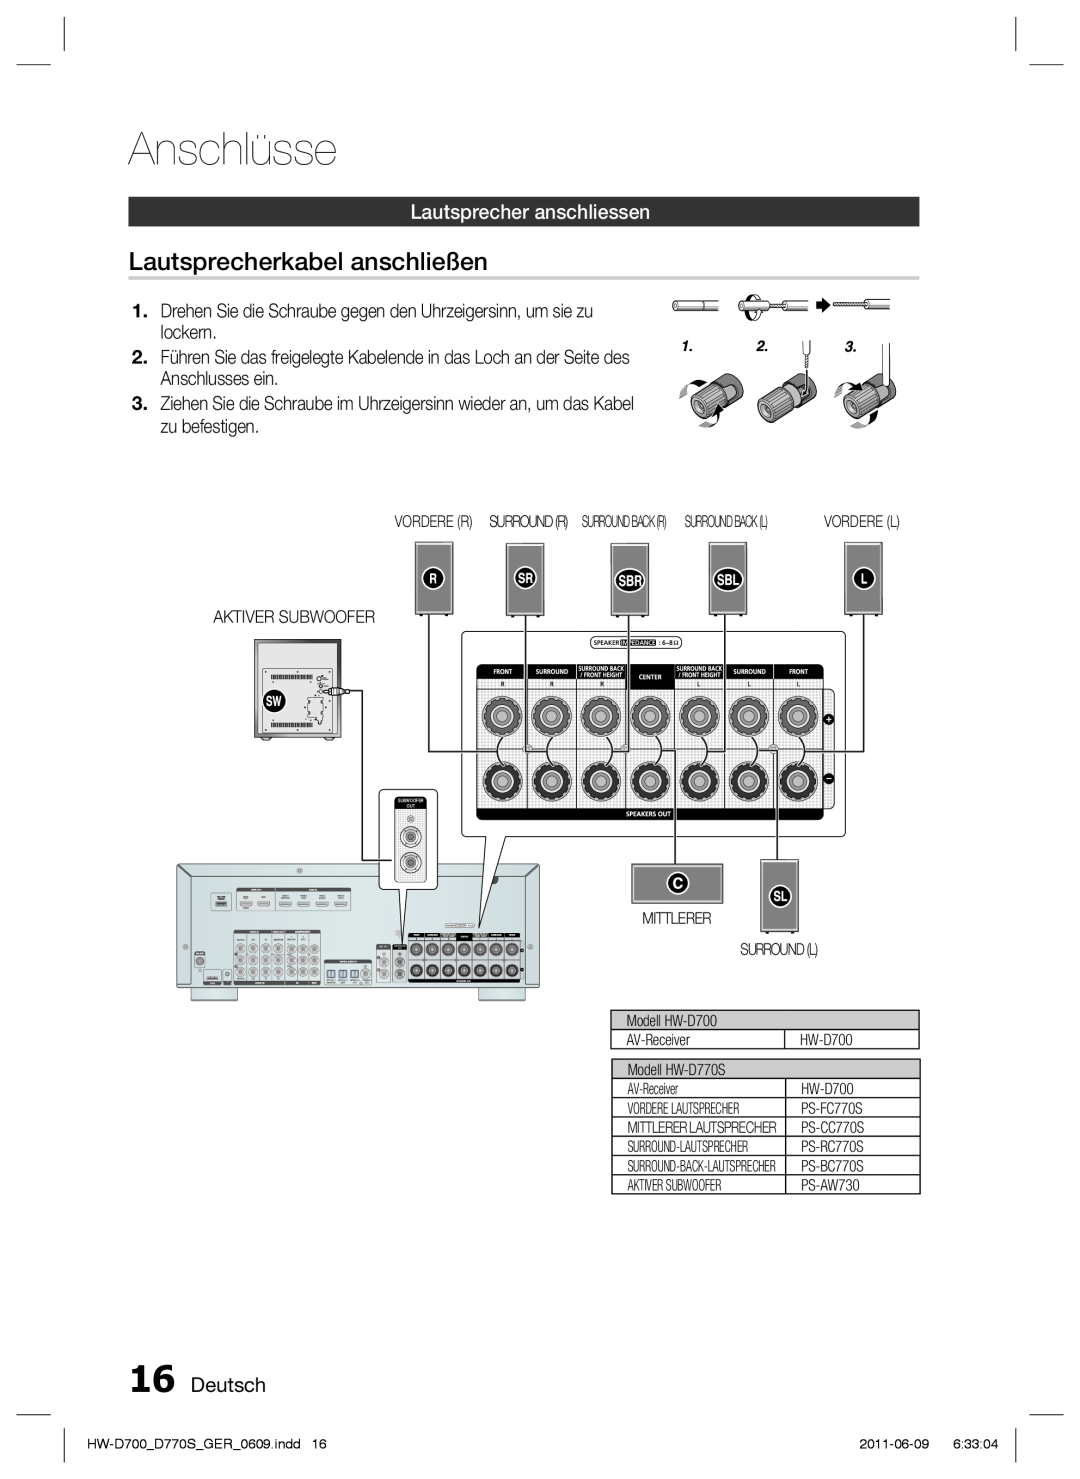 Samsung HW-D770S/EN, HW-D700/EN manual Lautsprecherkabel anschließen, Lautsprecher anschliessen, Deutsch, Anschlüsse 